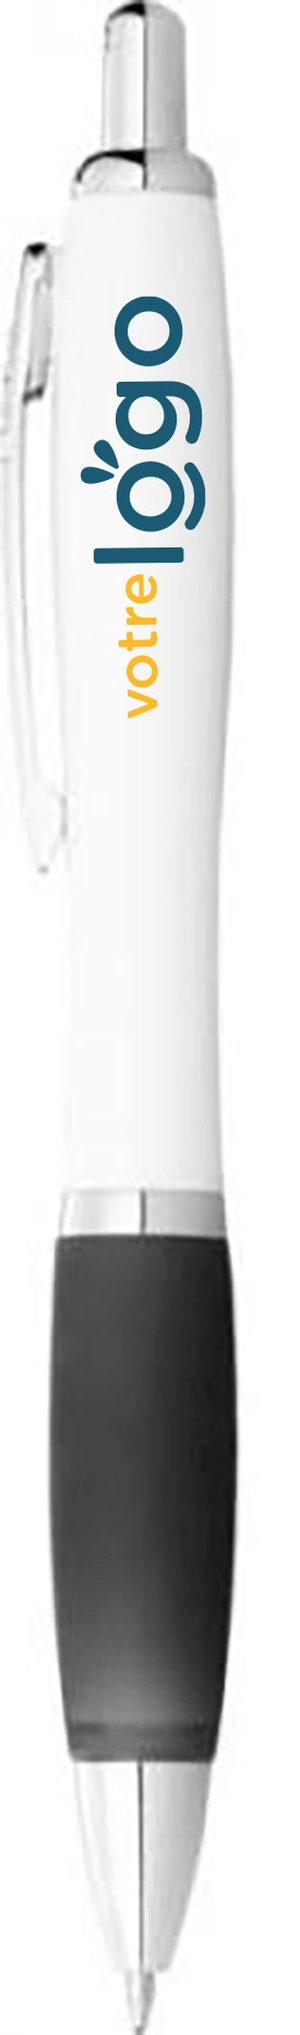 Stylo blanc personnalisé avec des grip de couleurs personnalisable